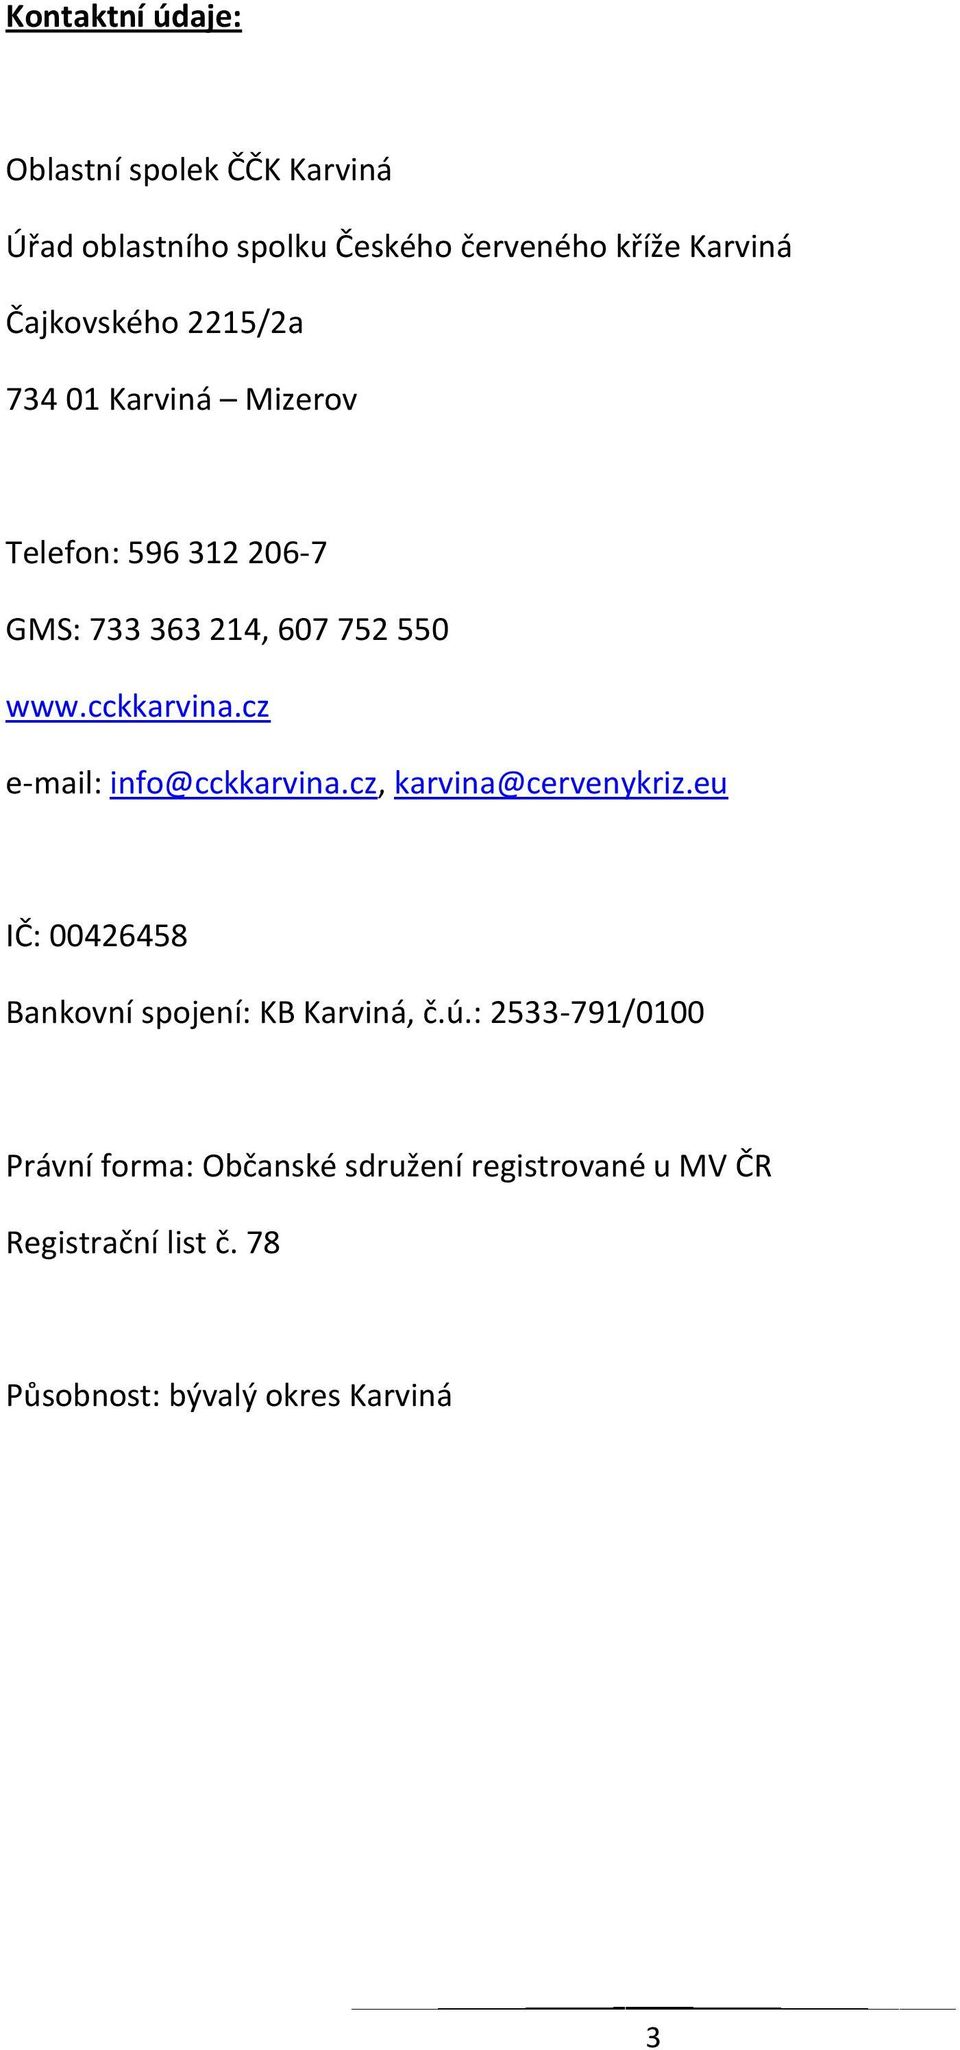 cckkarvina.cz e-mail: info@cckkarvina.cz, karvina@cervenykriz.eu IČ: 00426458 Bankovní spojení: KB Karviná, č.